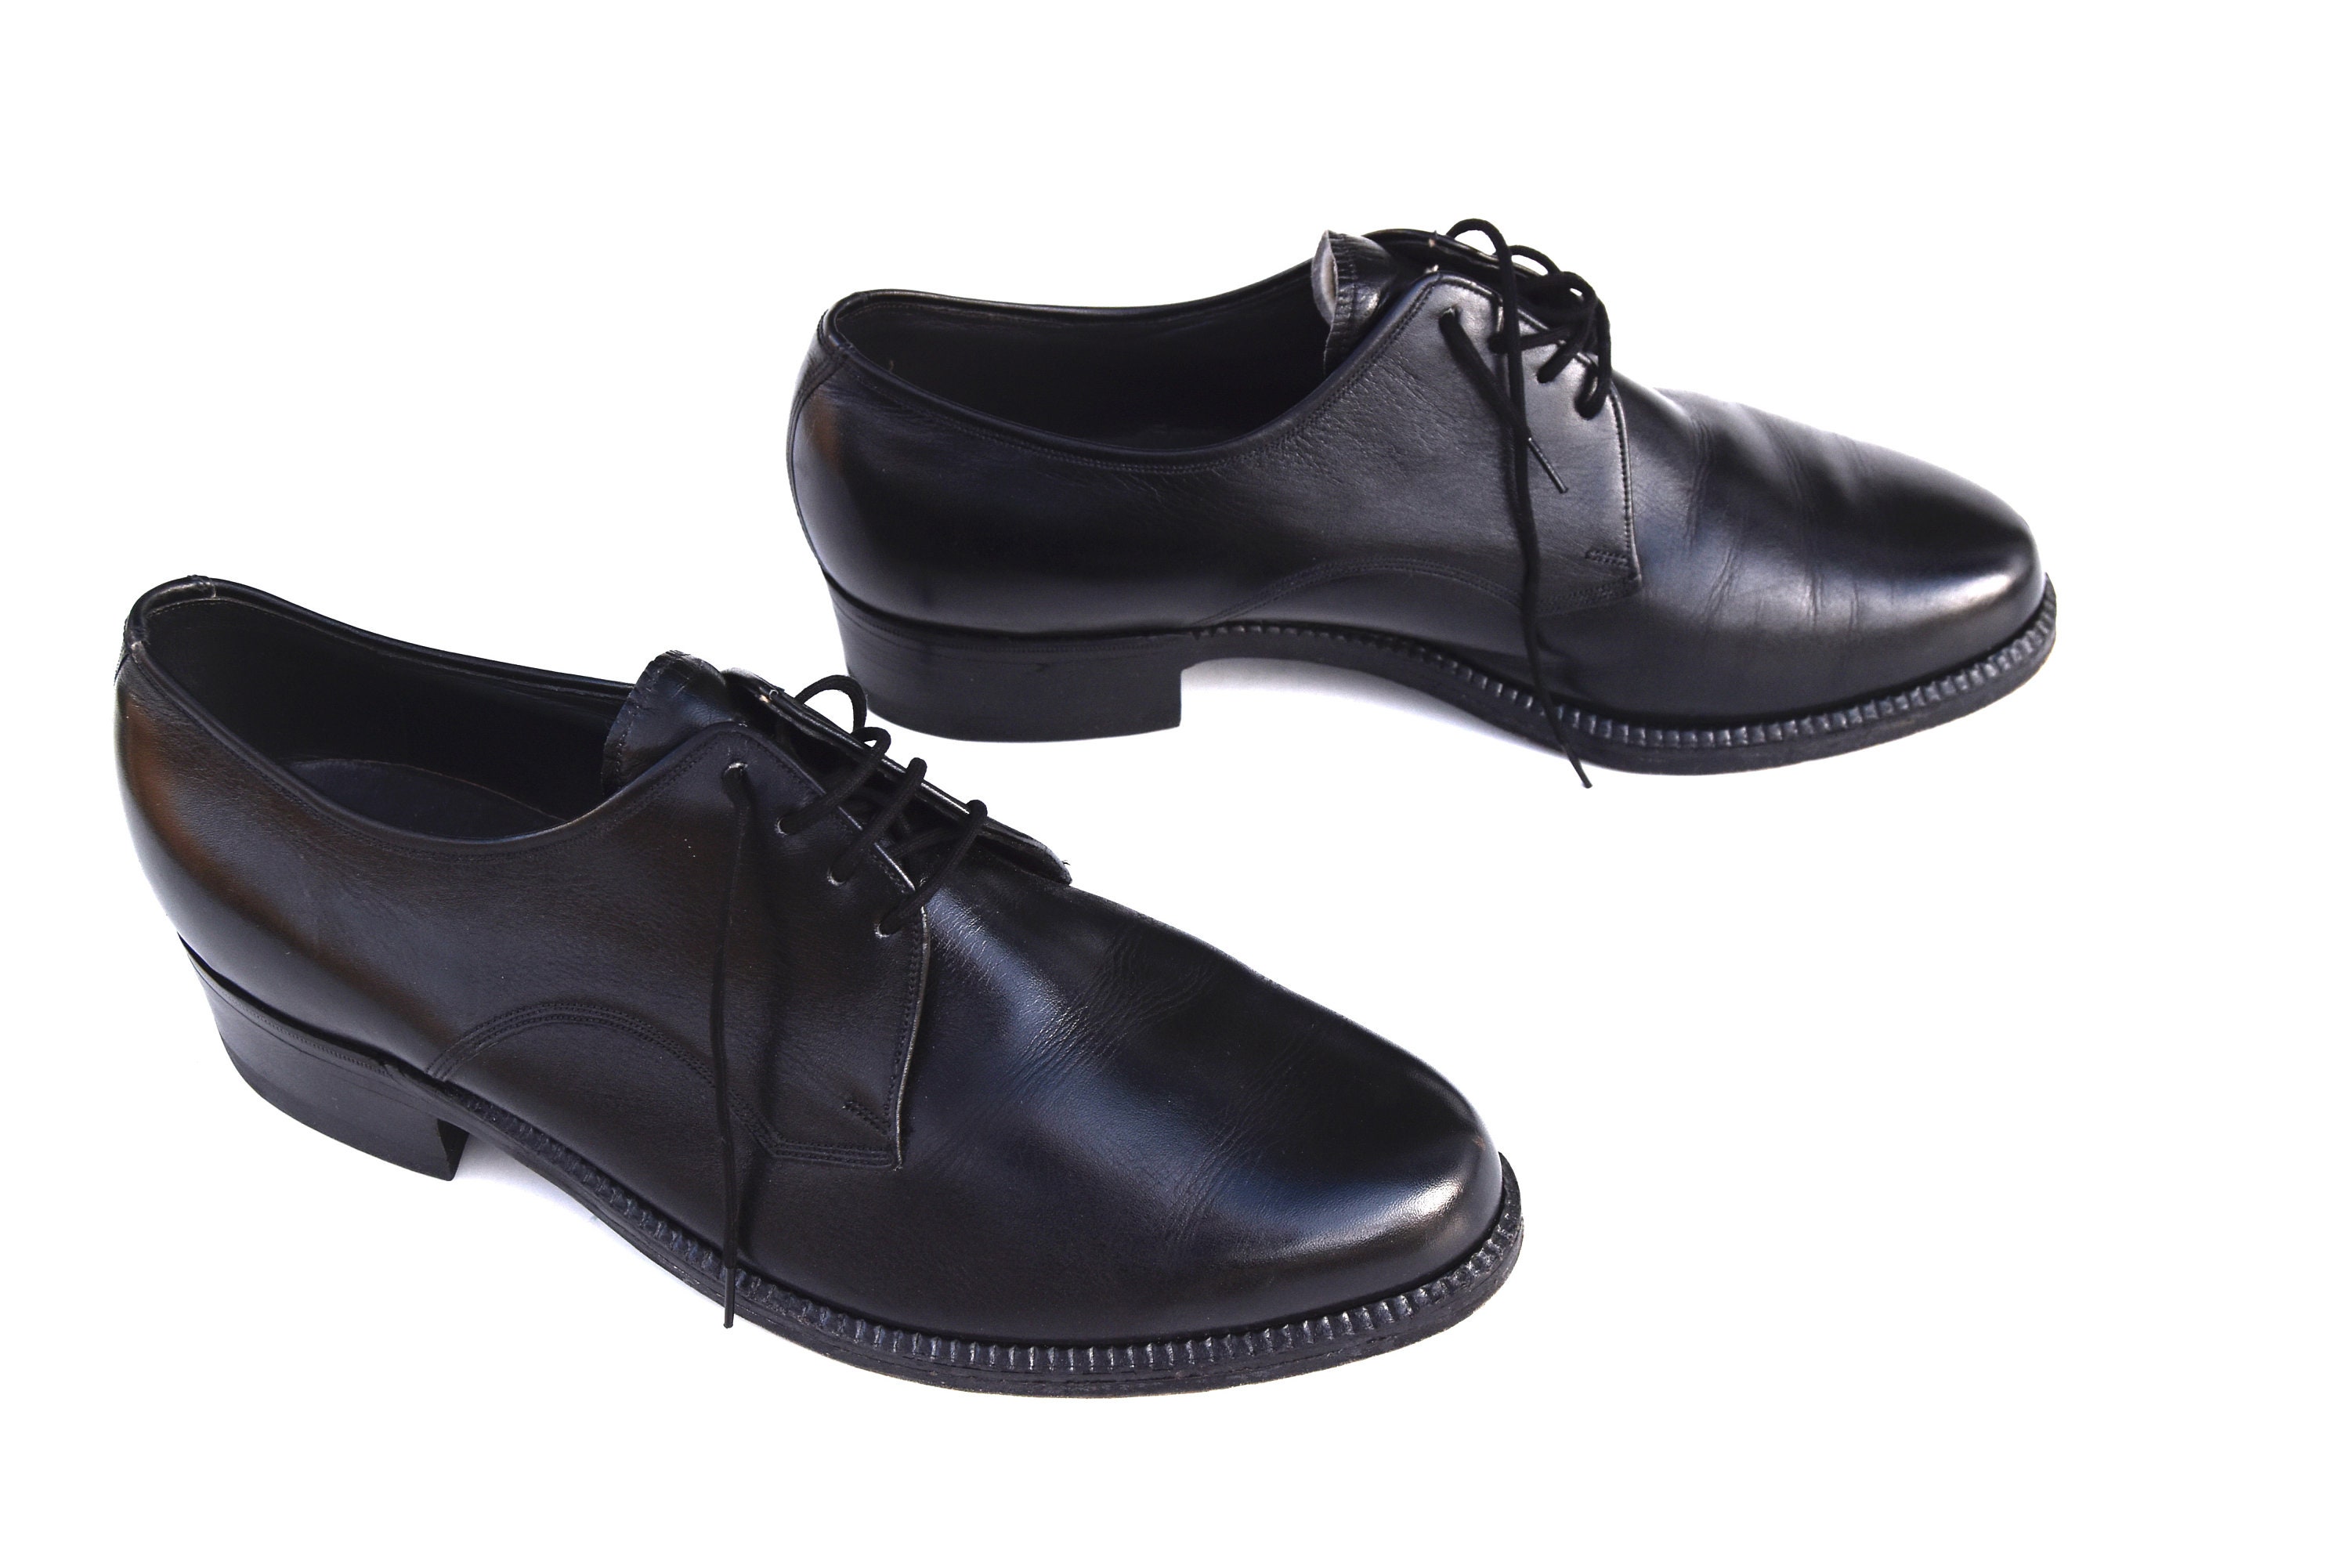 1960s Men's Salamander Black Leather Dress Shoes Retro | Etsy